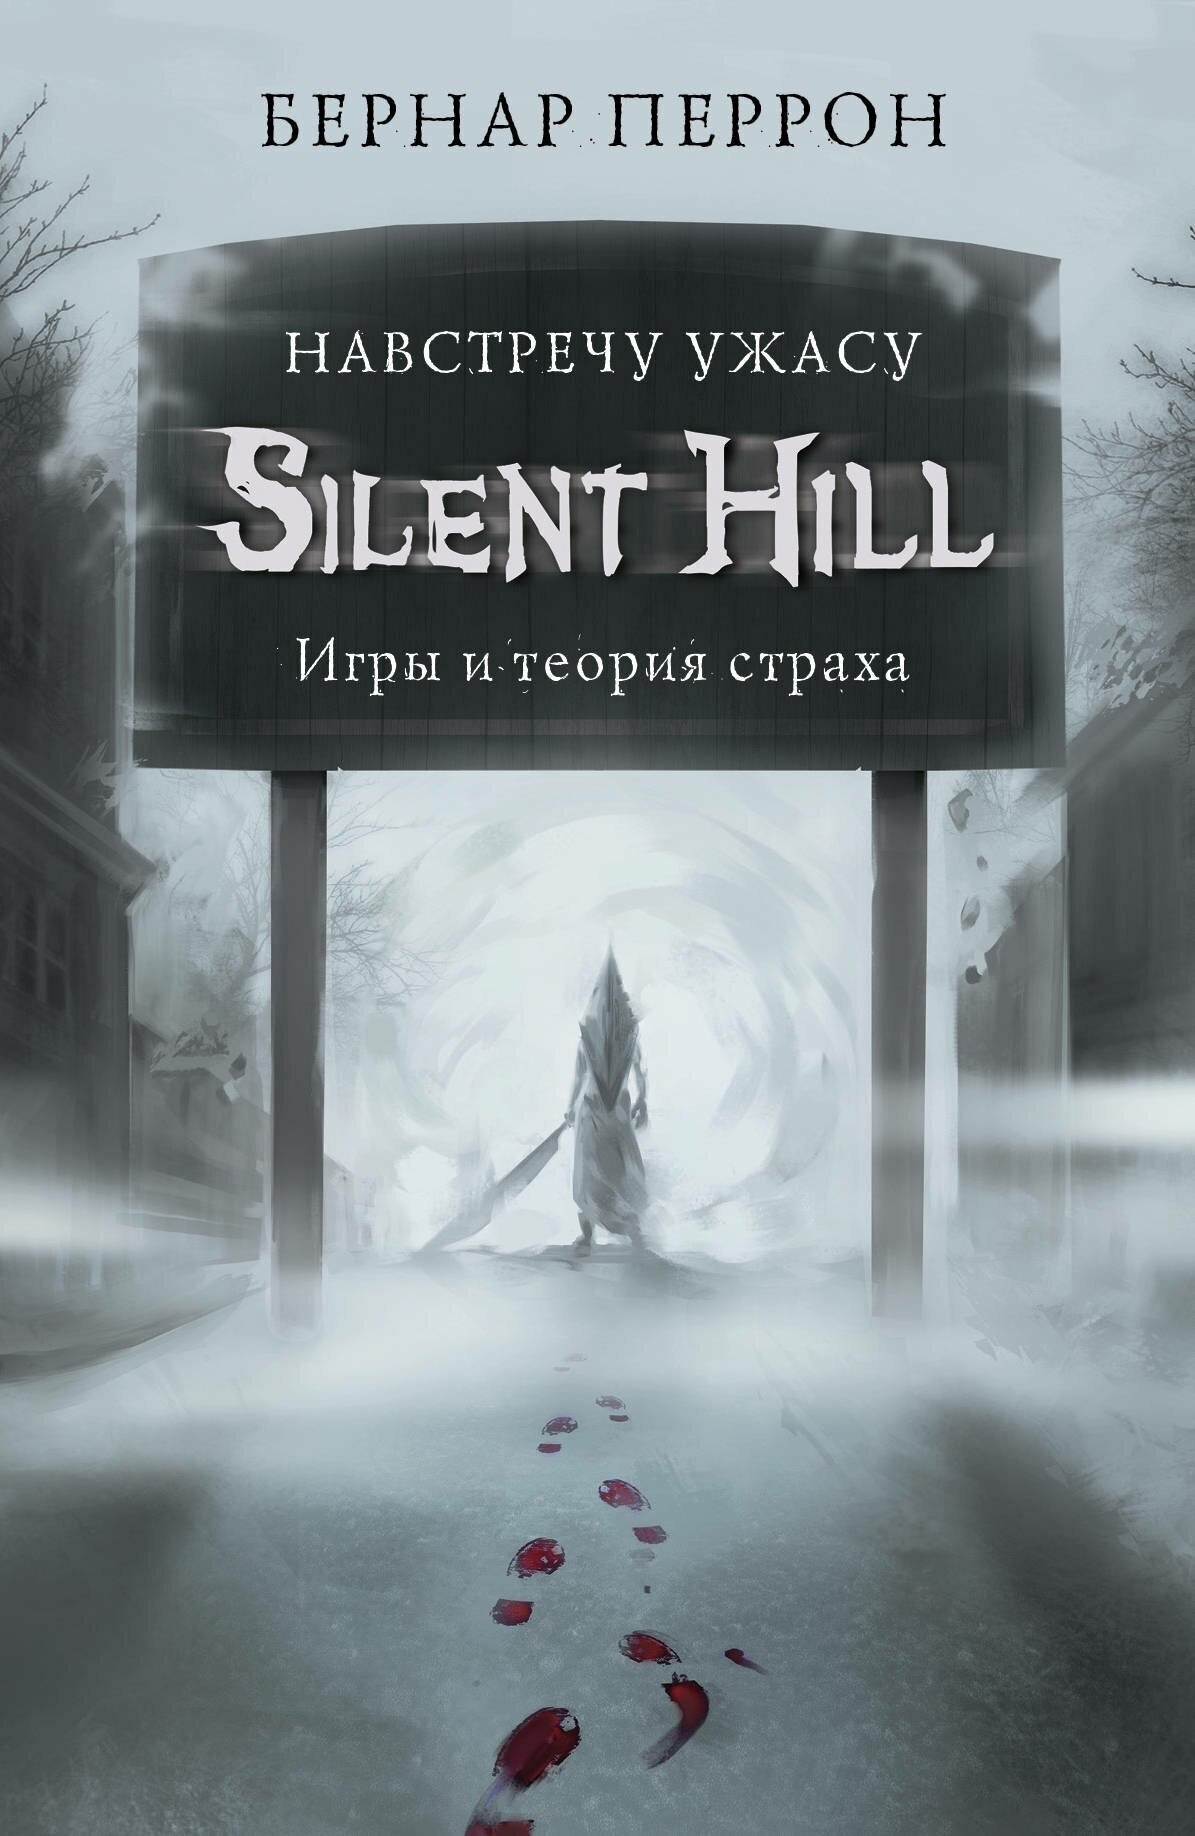 Э. ЛегКомпИг. Silent Hill. Навстречу ужасу. Игр. и теор